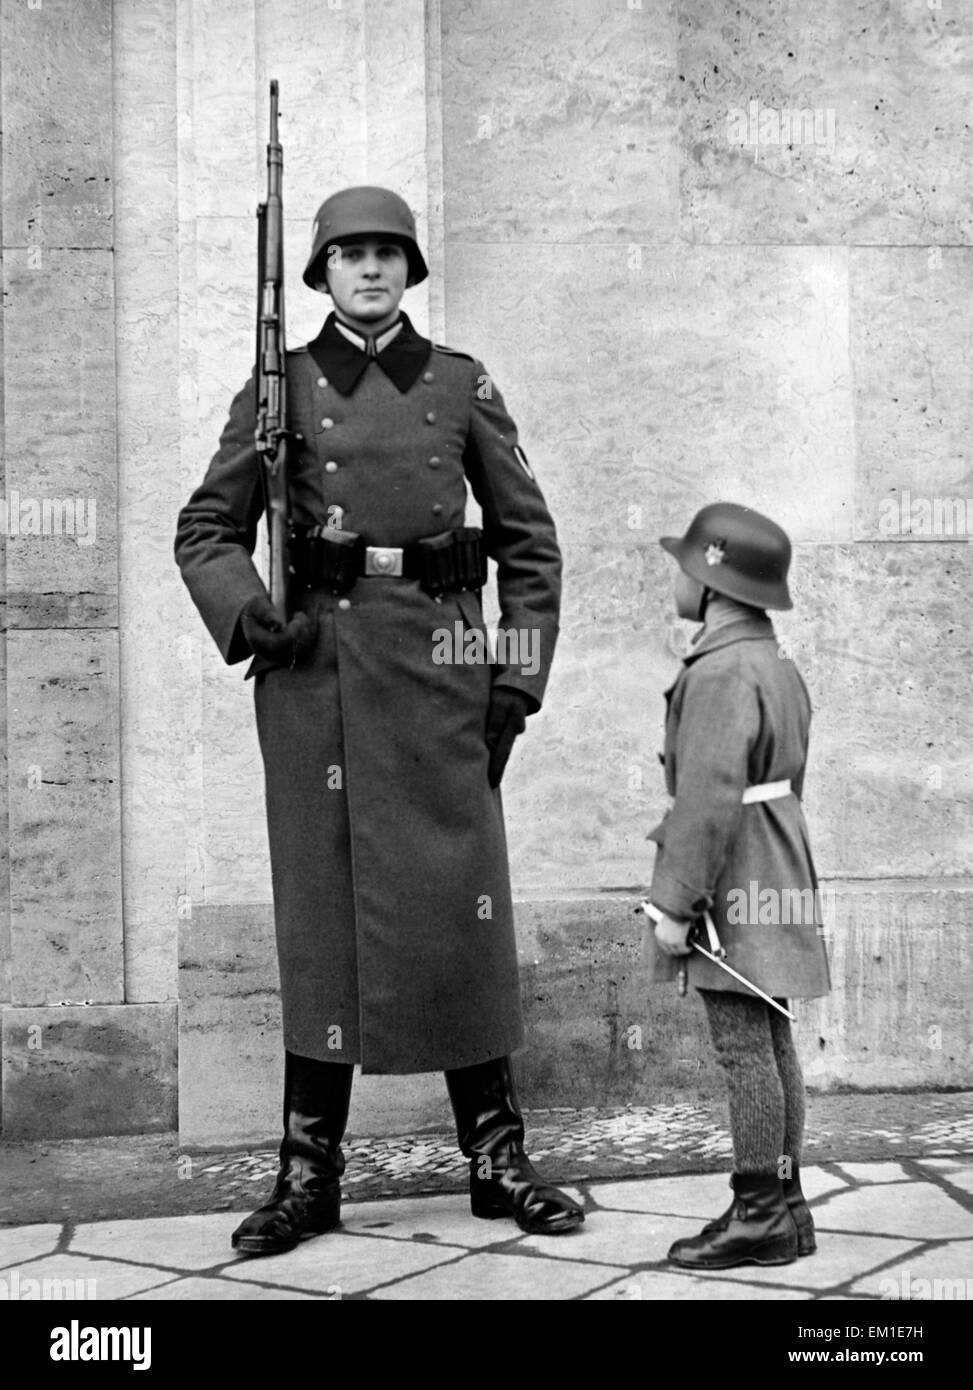 Soldat steht neben einem Type en uniforme. Banque D'Images